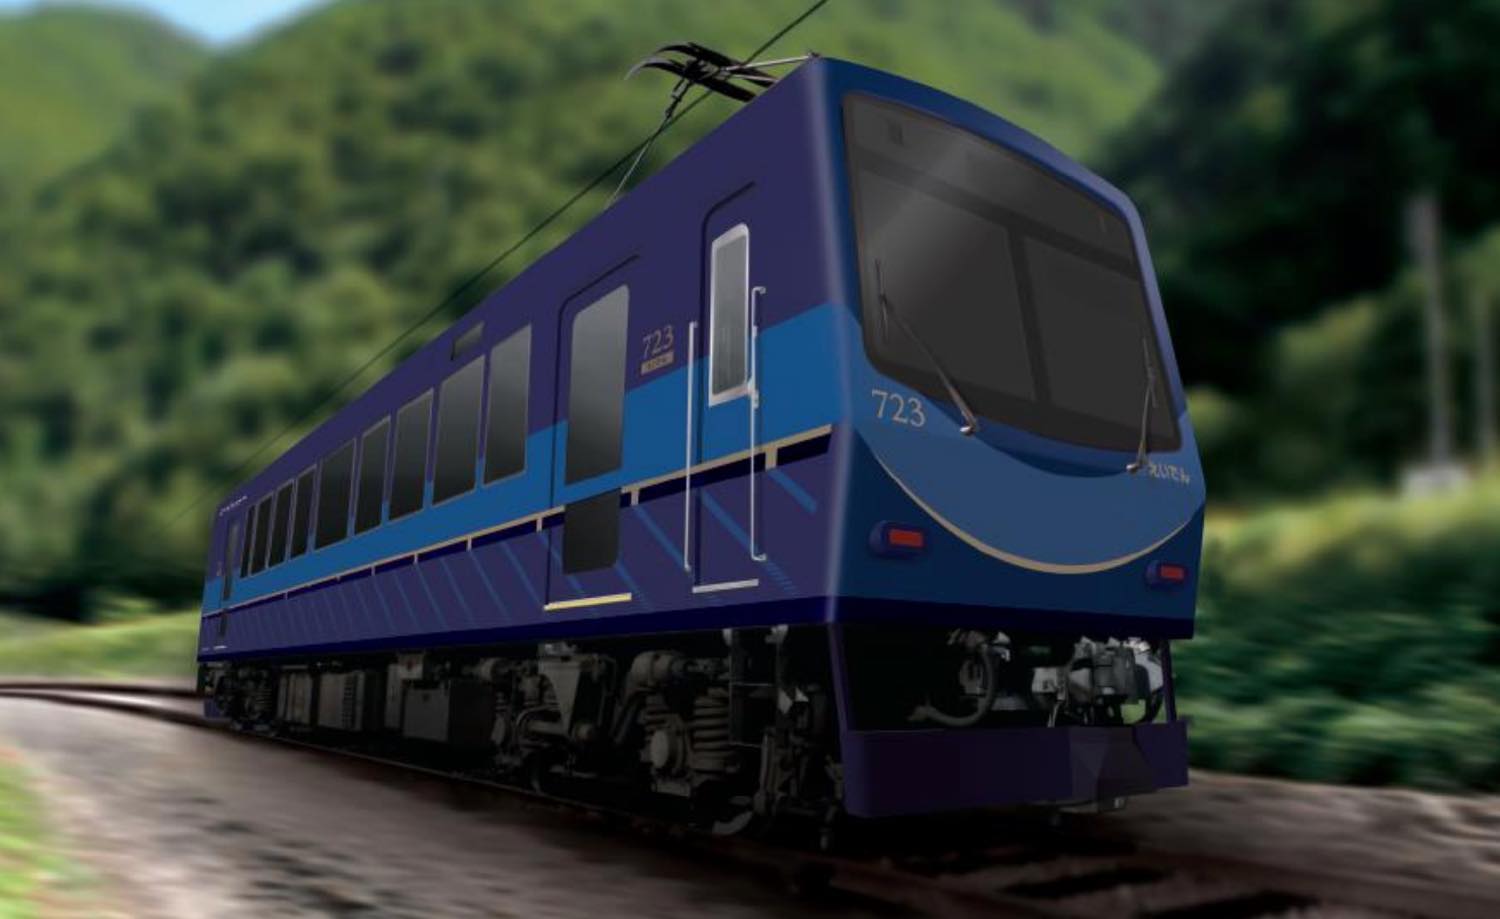 叡山電鉄が700系リニューアル車両 723号車の運行を 2020年10月18日から開始すると発表！